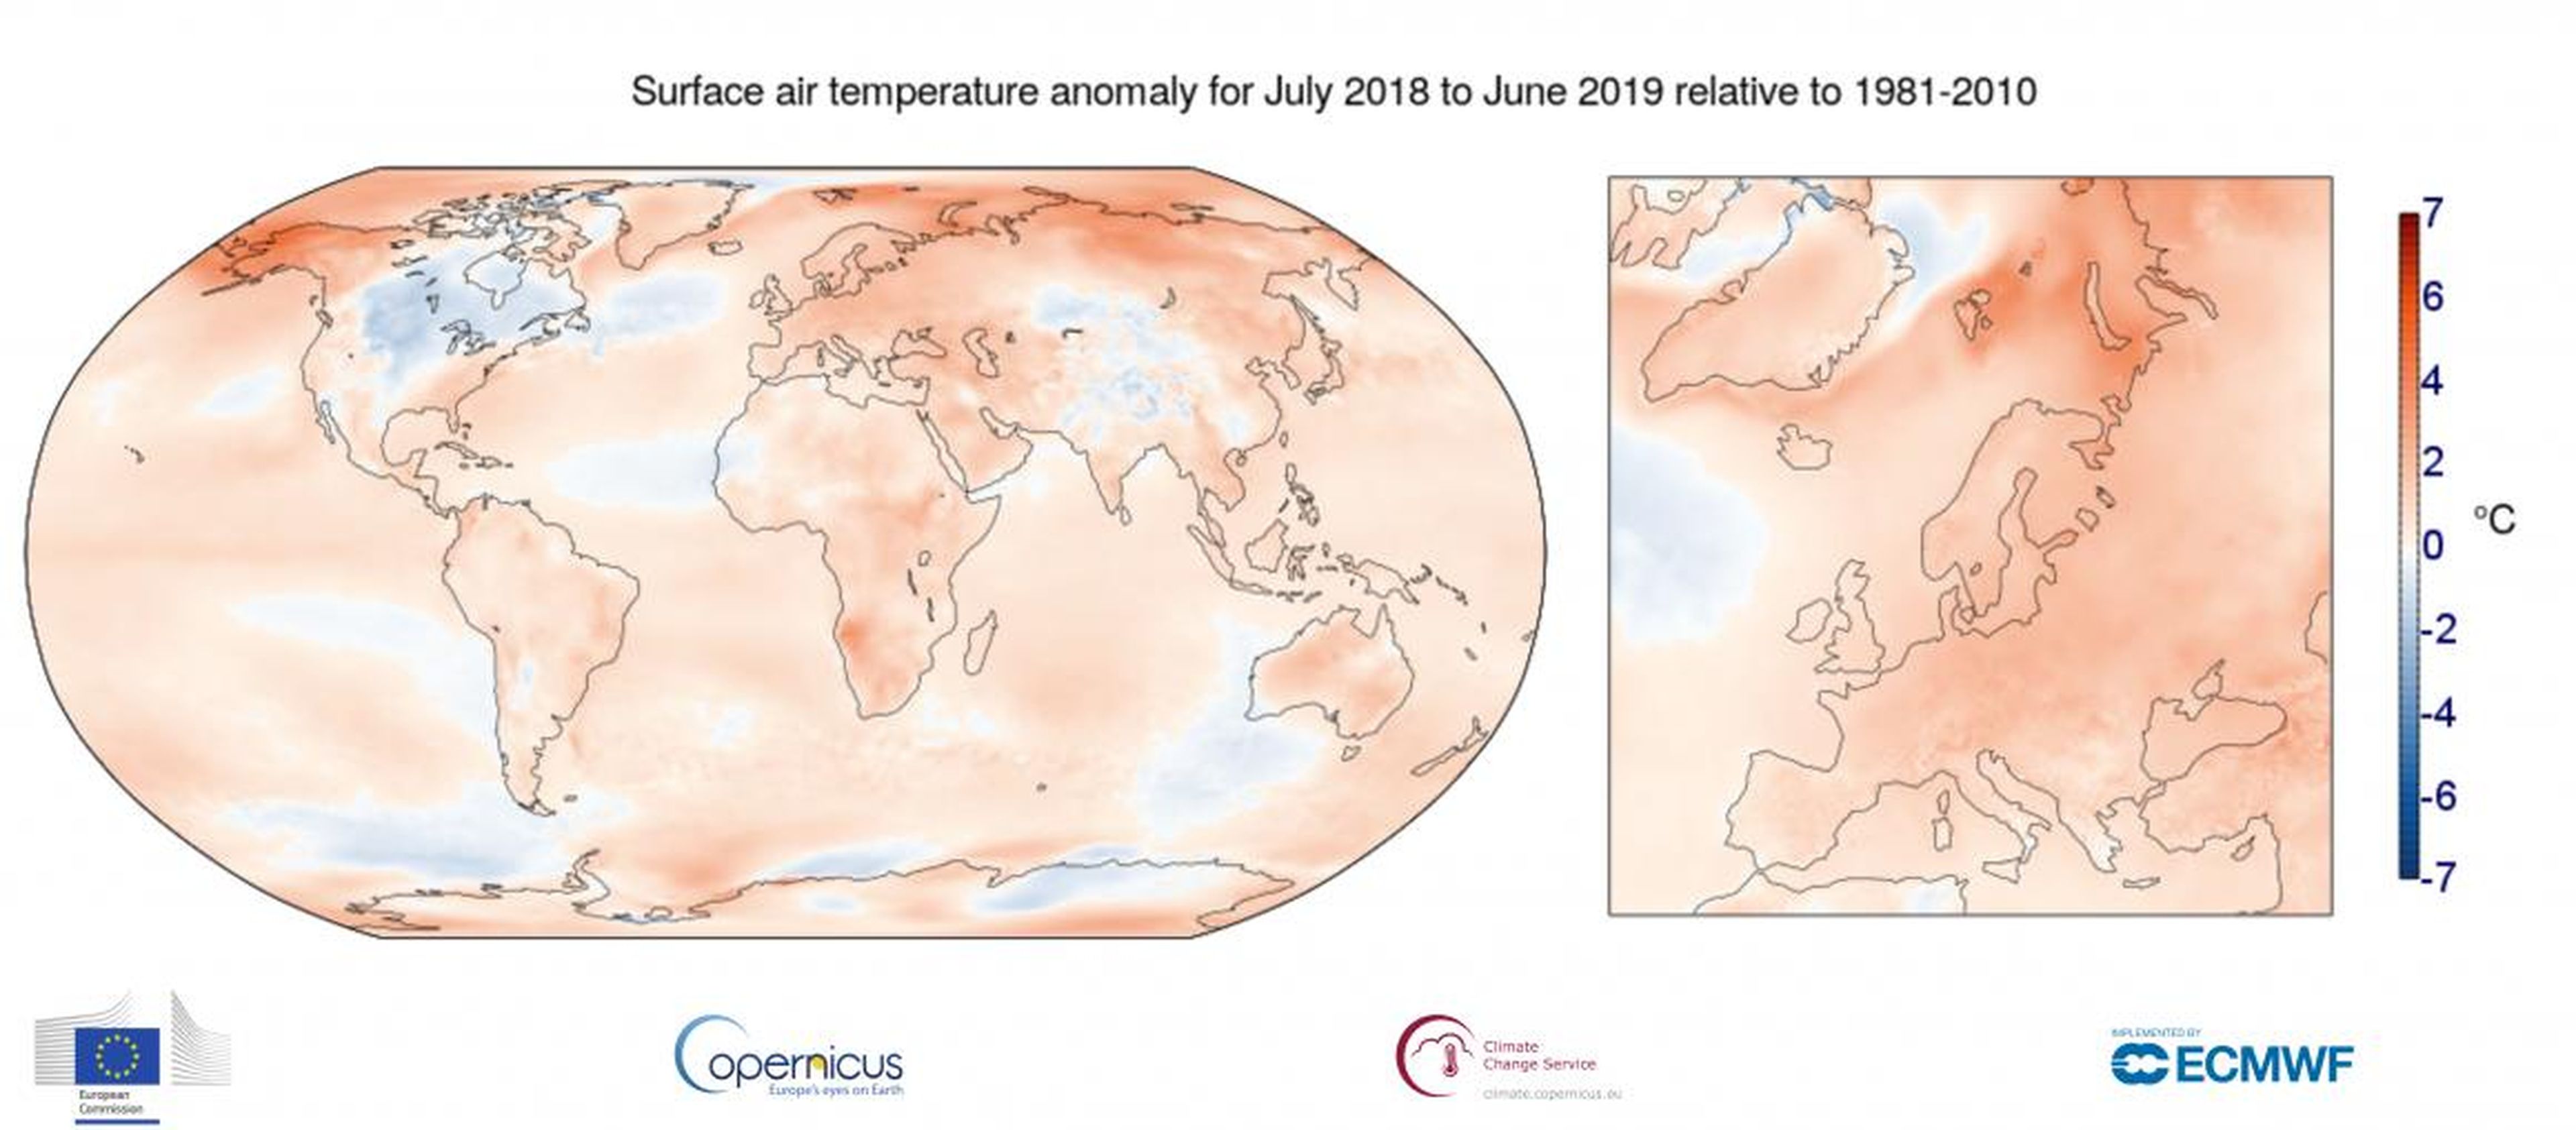 Junio de 2019 fue el mes más caluroso de la historia, y los científicos predicen que julio también podría alcanzar temperaturas récord.